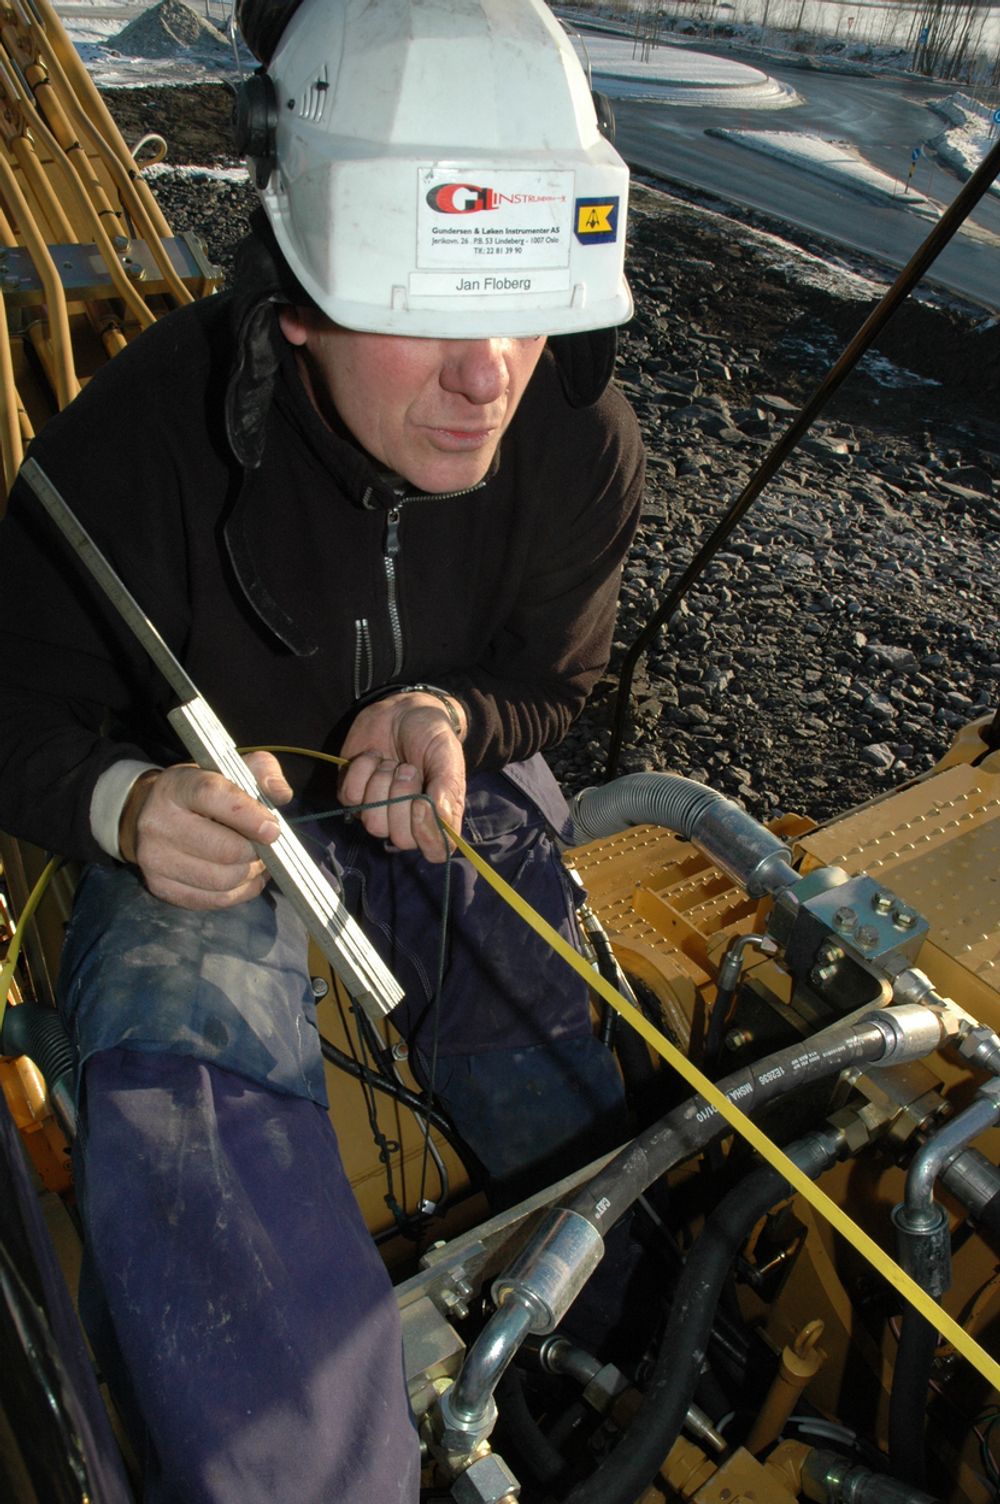 OPPMÅLING: Når antennen er montert, må avstander og høyde måles i forhold til aksen gravemaskinen dreier om. Deretter skal disse verdiene inn i datamaskinen.